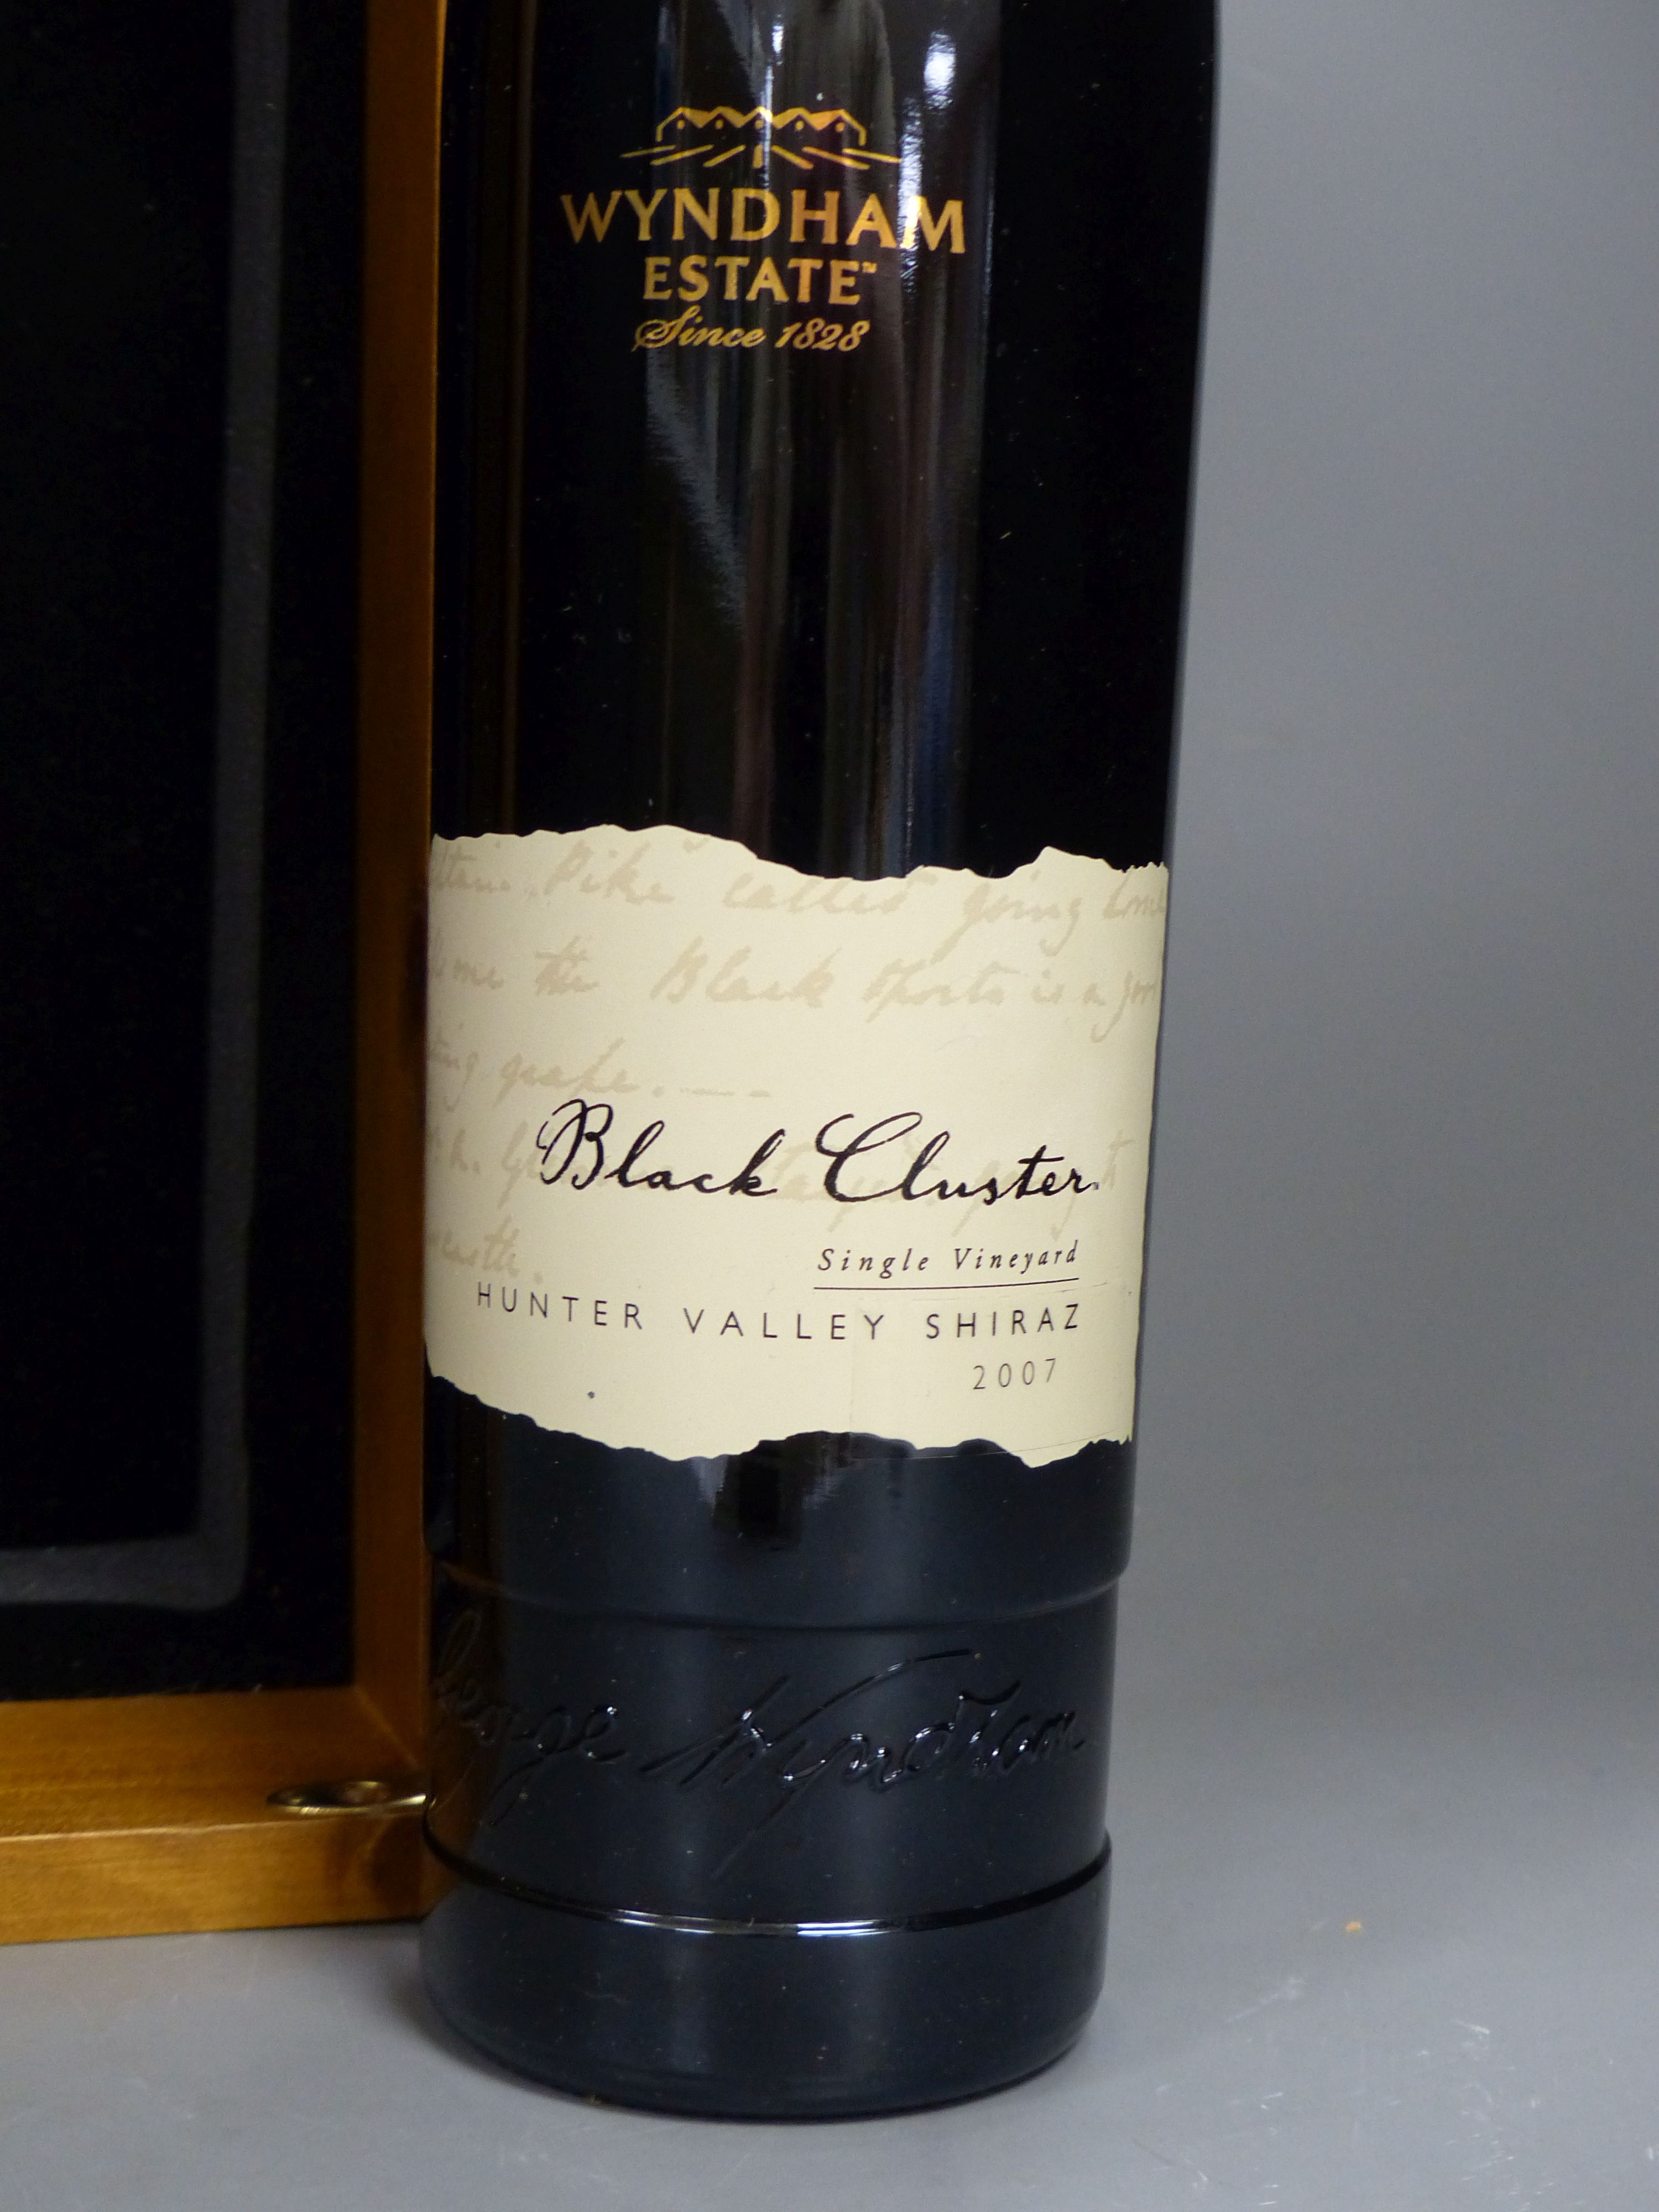 A cased bottle of Wyndham Estate Black Cluster Shiraz, 2007.